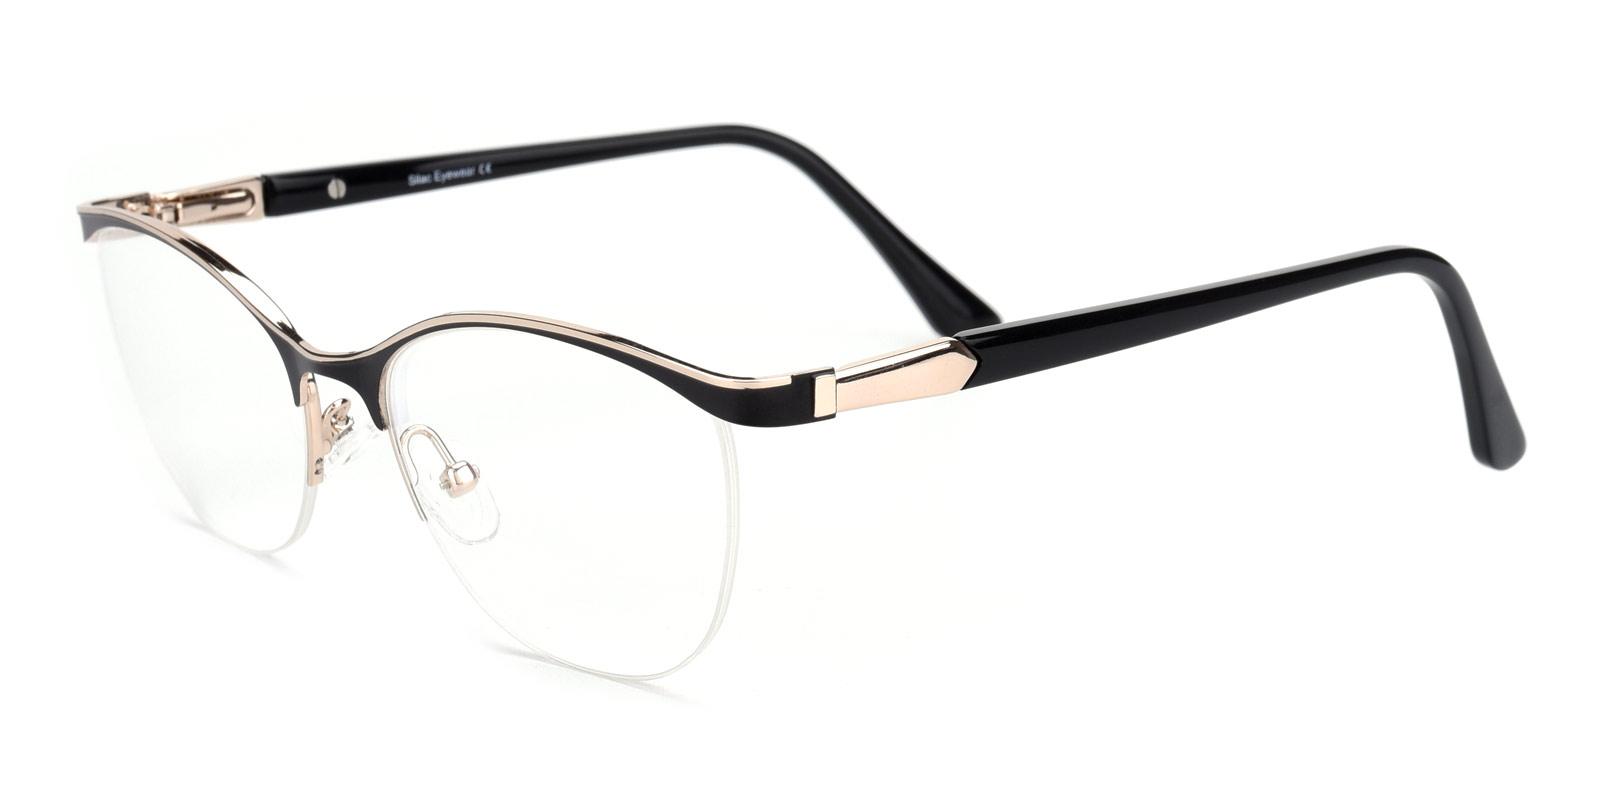 Alexis-Black-Cat / Oval-Metal-Eyeglasses-detail